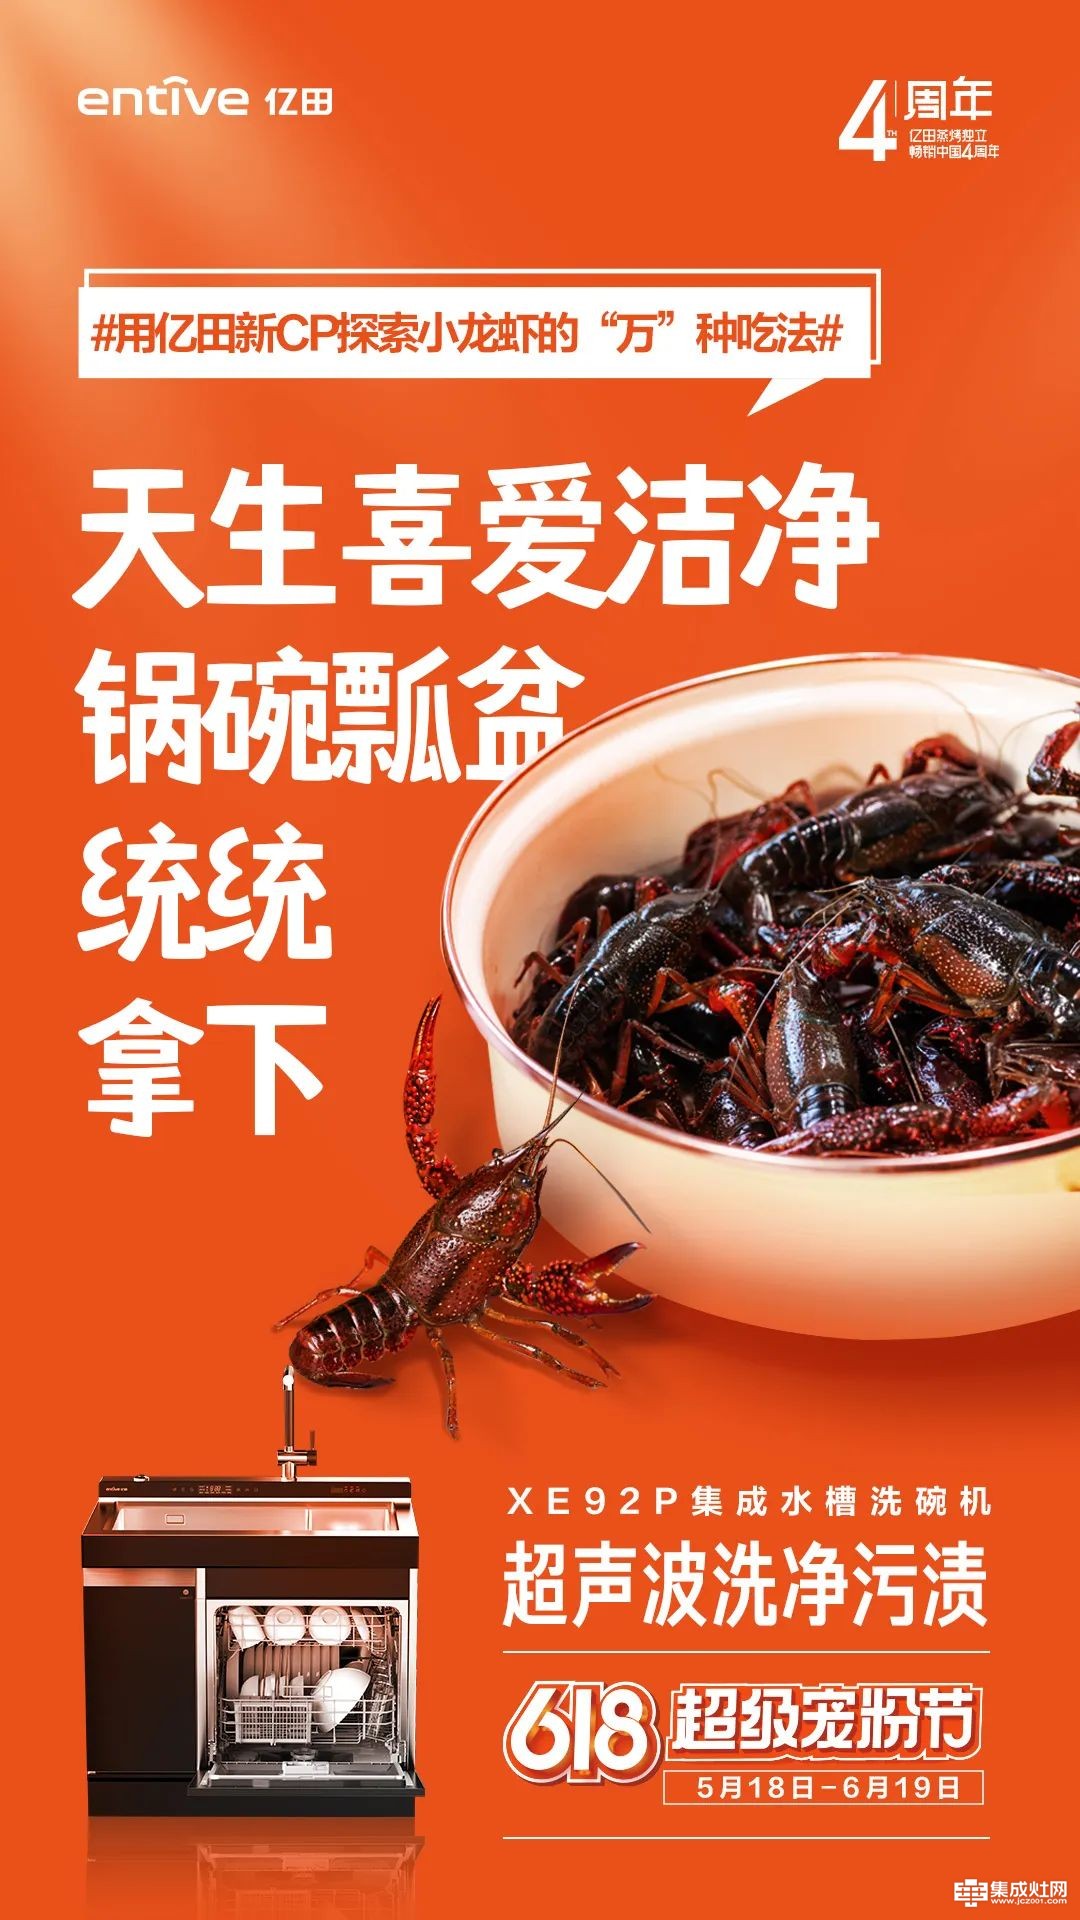 万物皆可烹 亿田厨房新CP 探索小龙虾的“万”种吃法